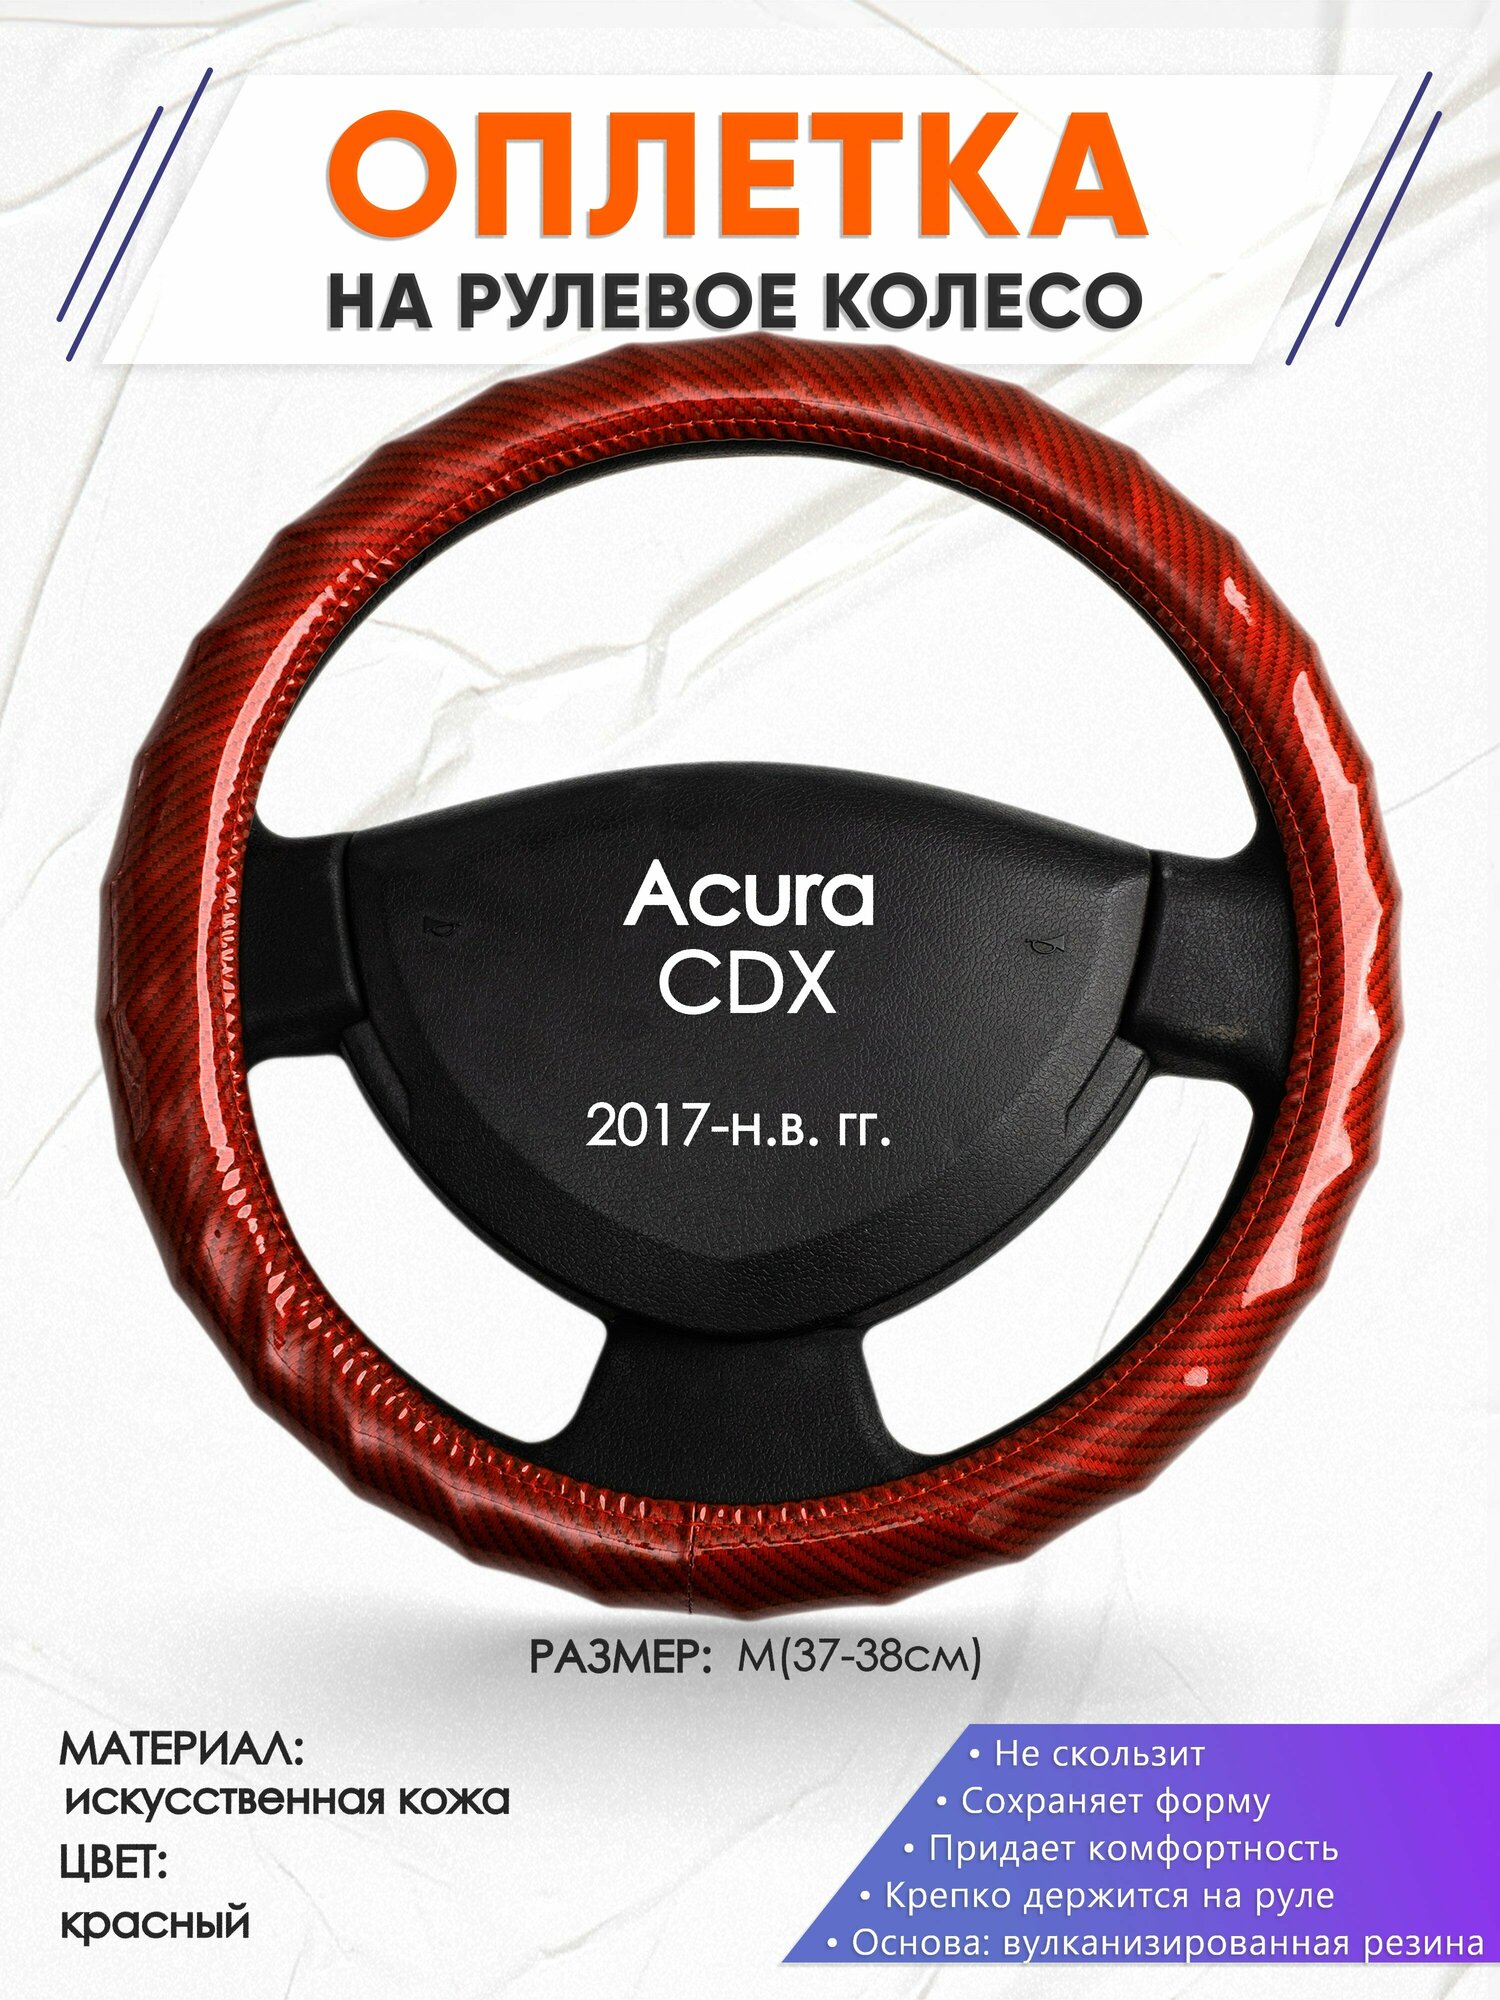 Оплетка наруль для Acura CDX(Акура СДХ) 2017-н.в. годов выпуска, размер M(37-38см), Искусственная кожа 81